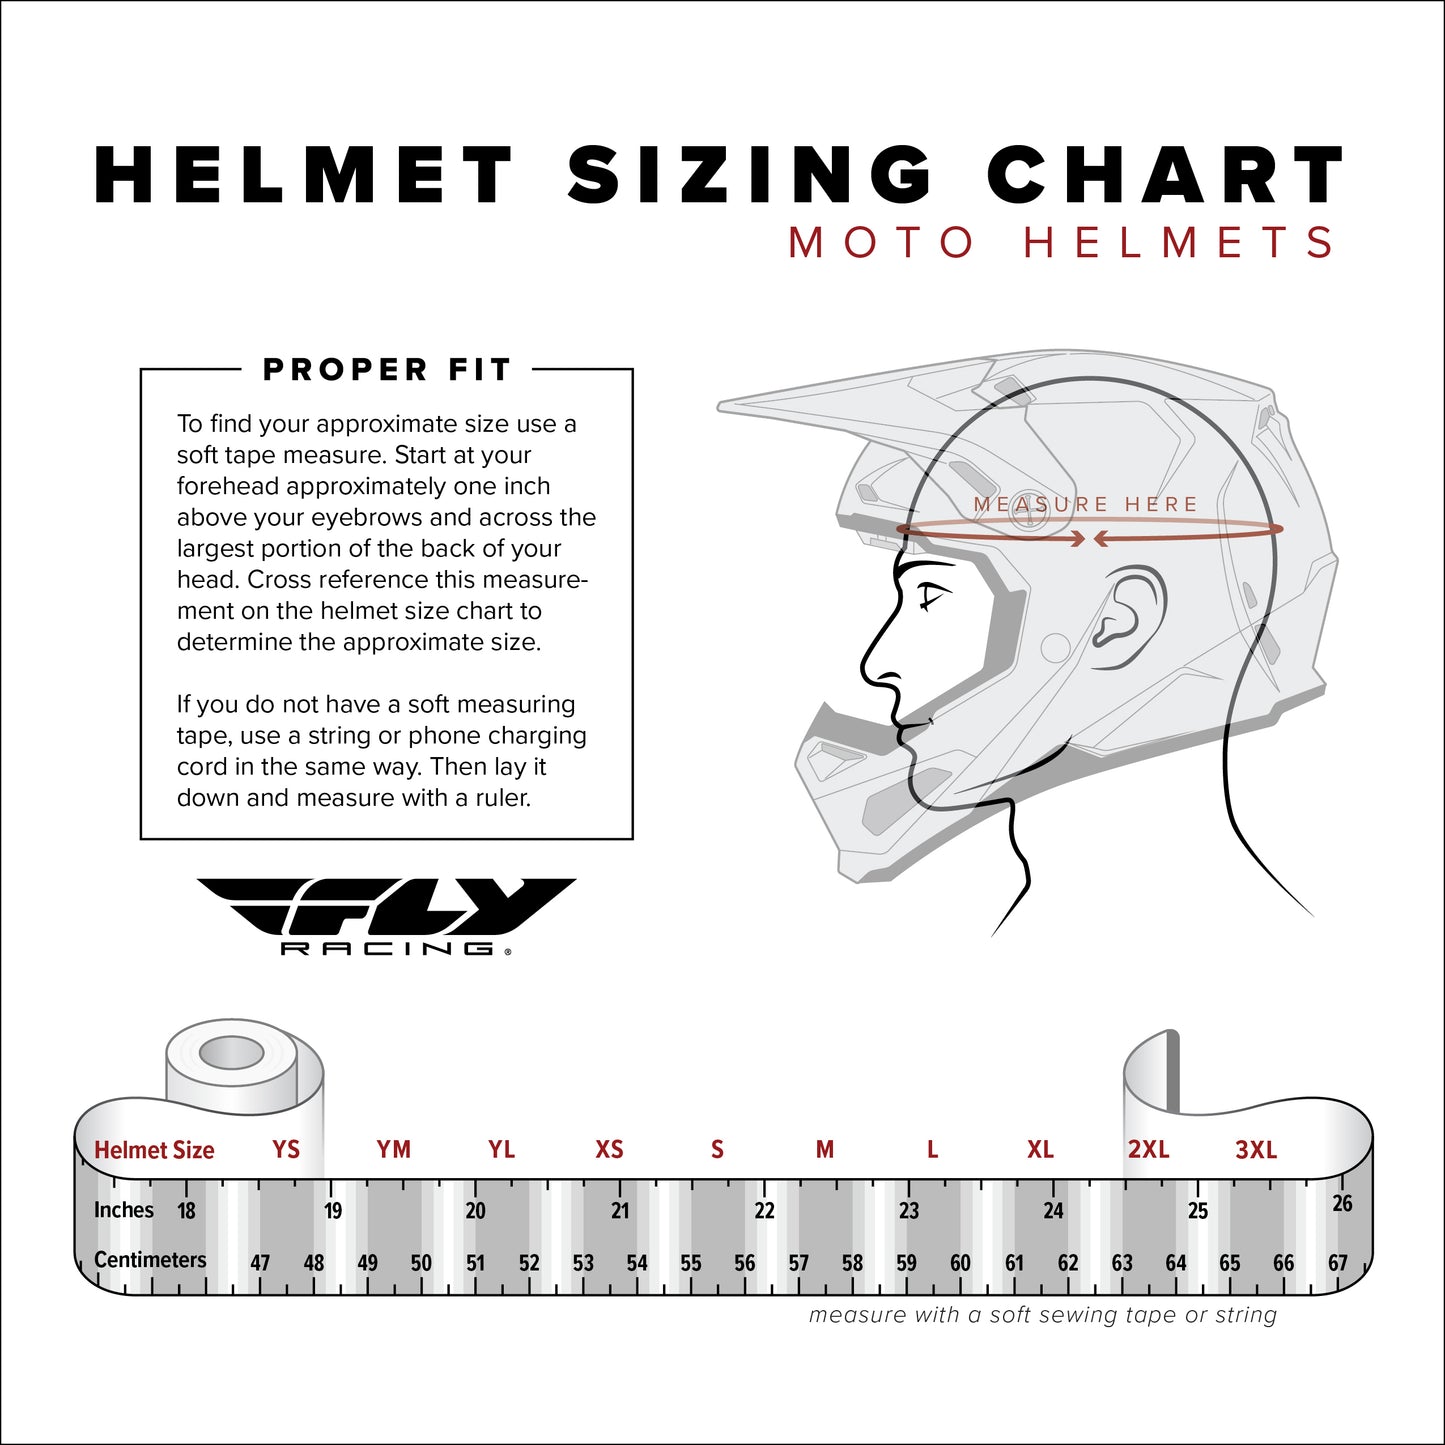 Fly Racing Helmet Formula CC Rockstar